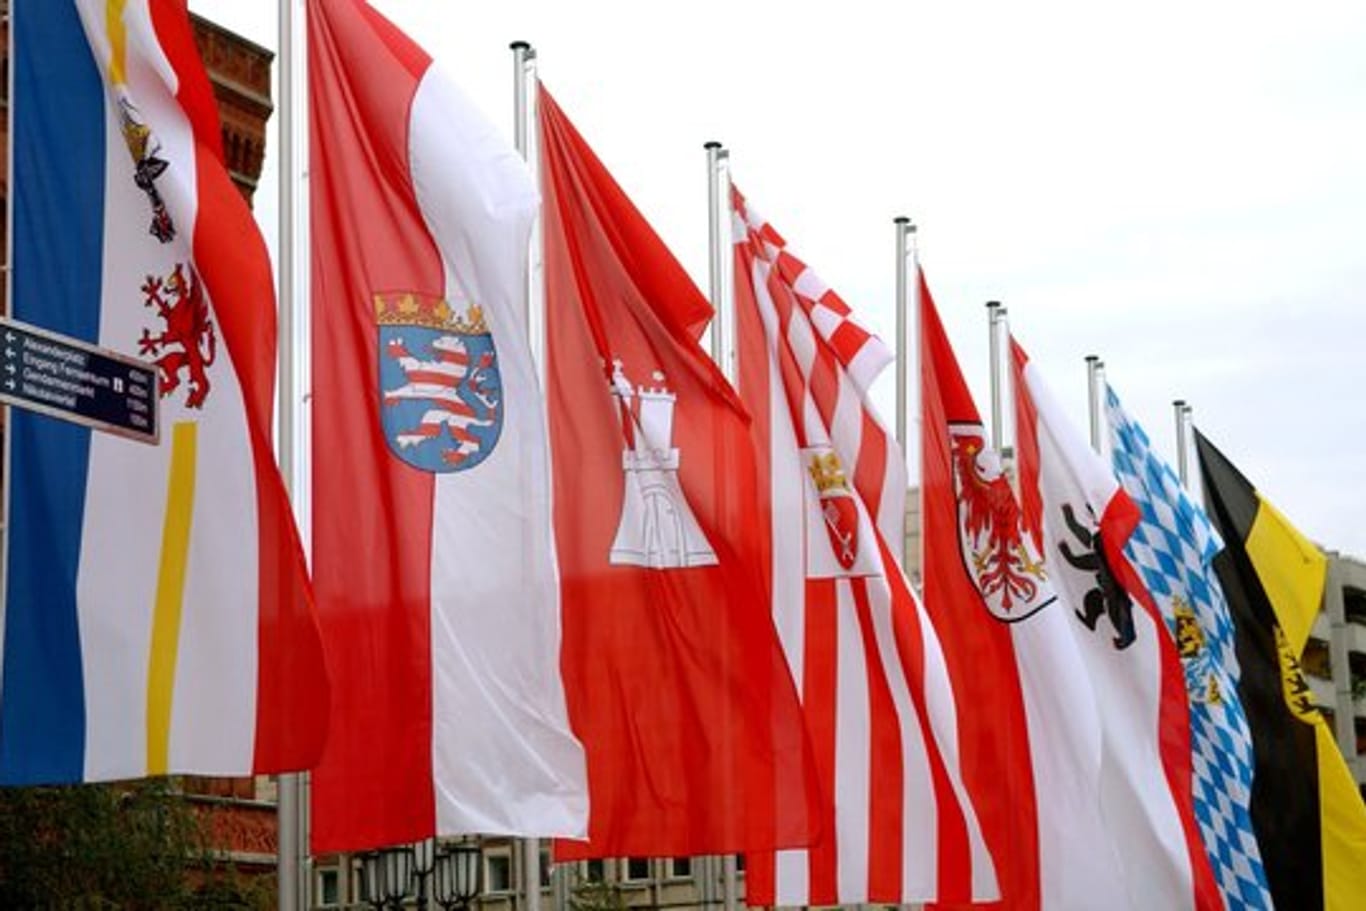 Die Fahnen mehrerer Bundesländer vir dem Berliner Rathaus.